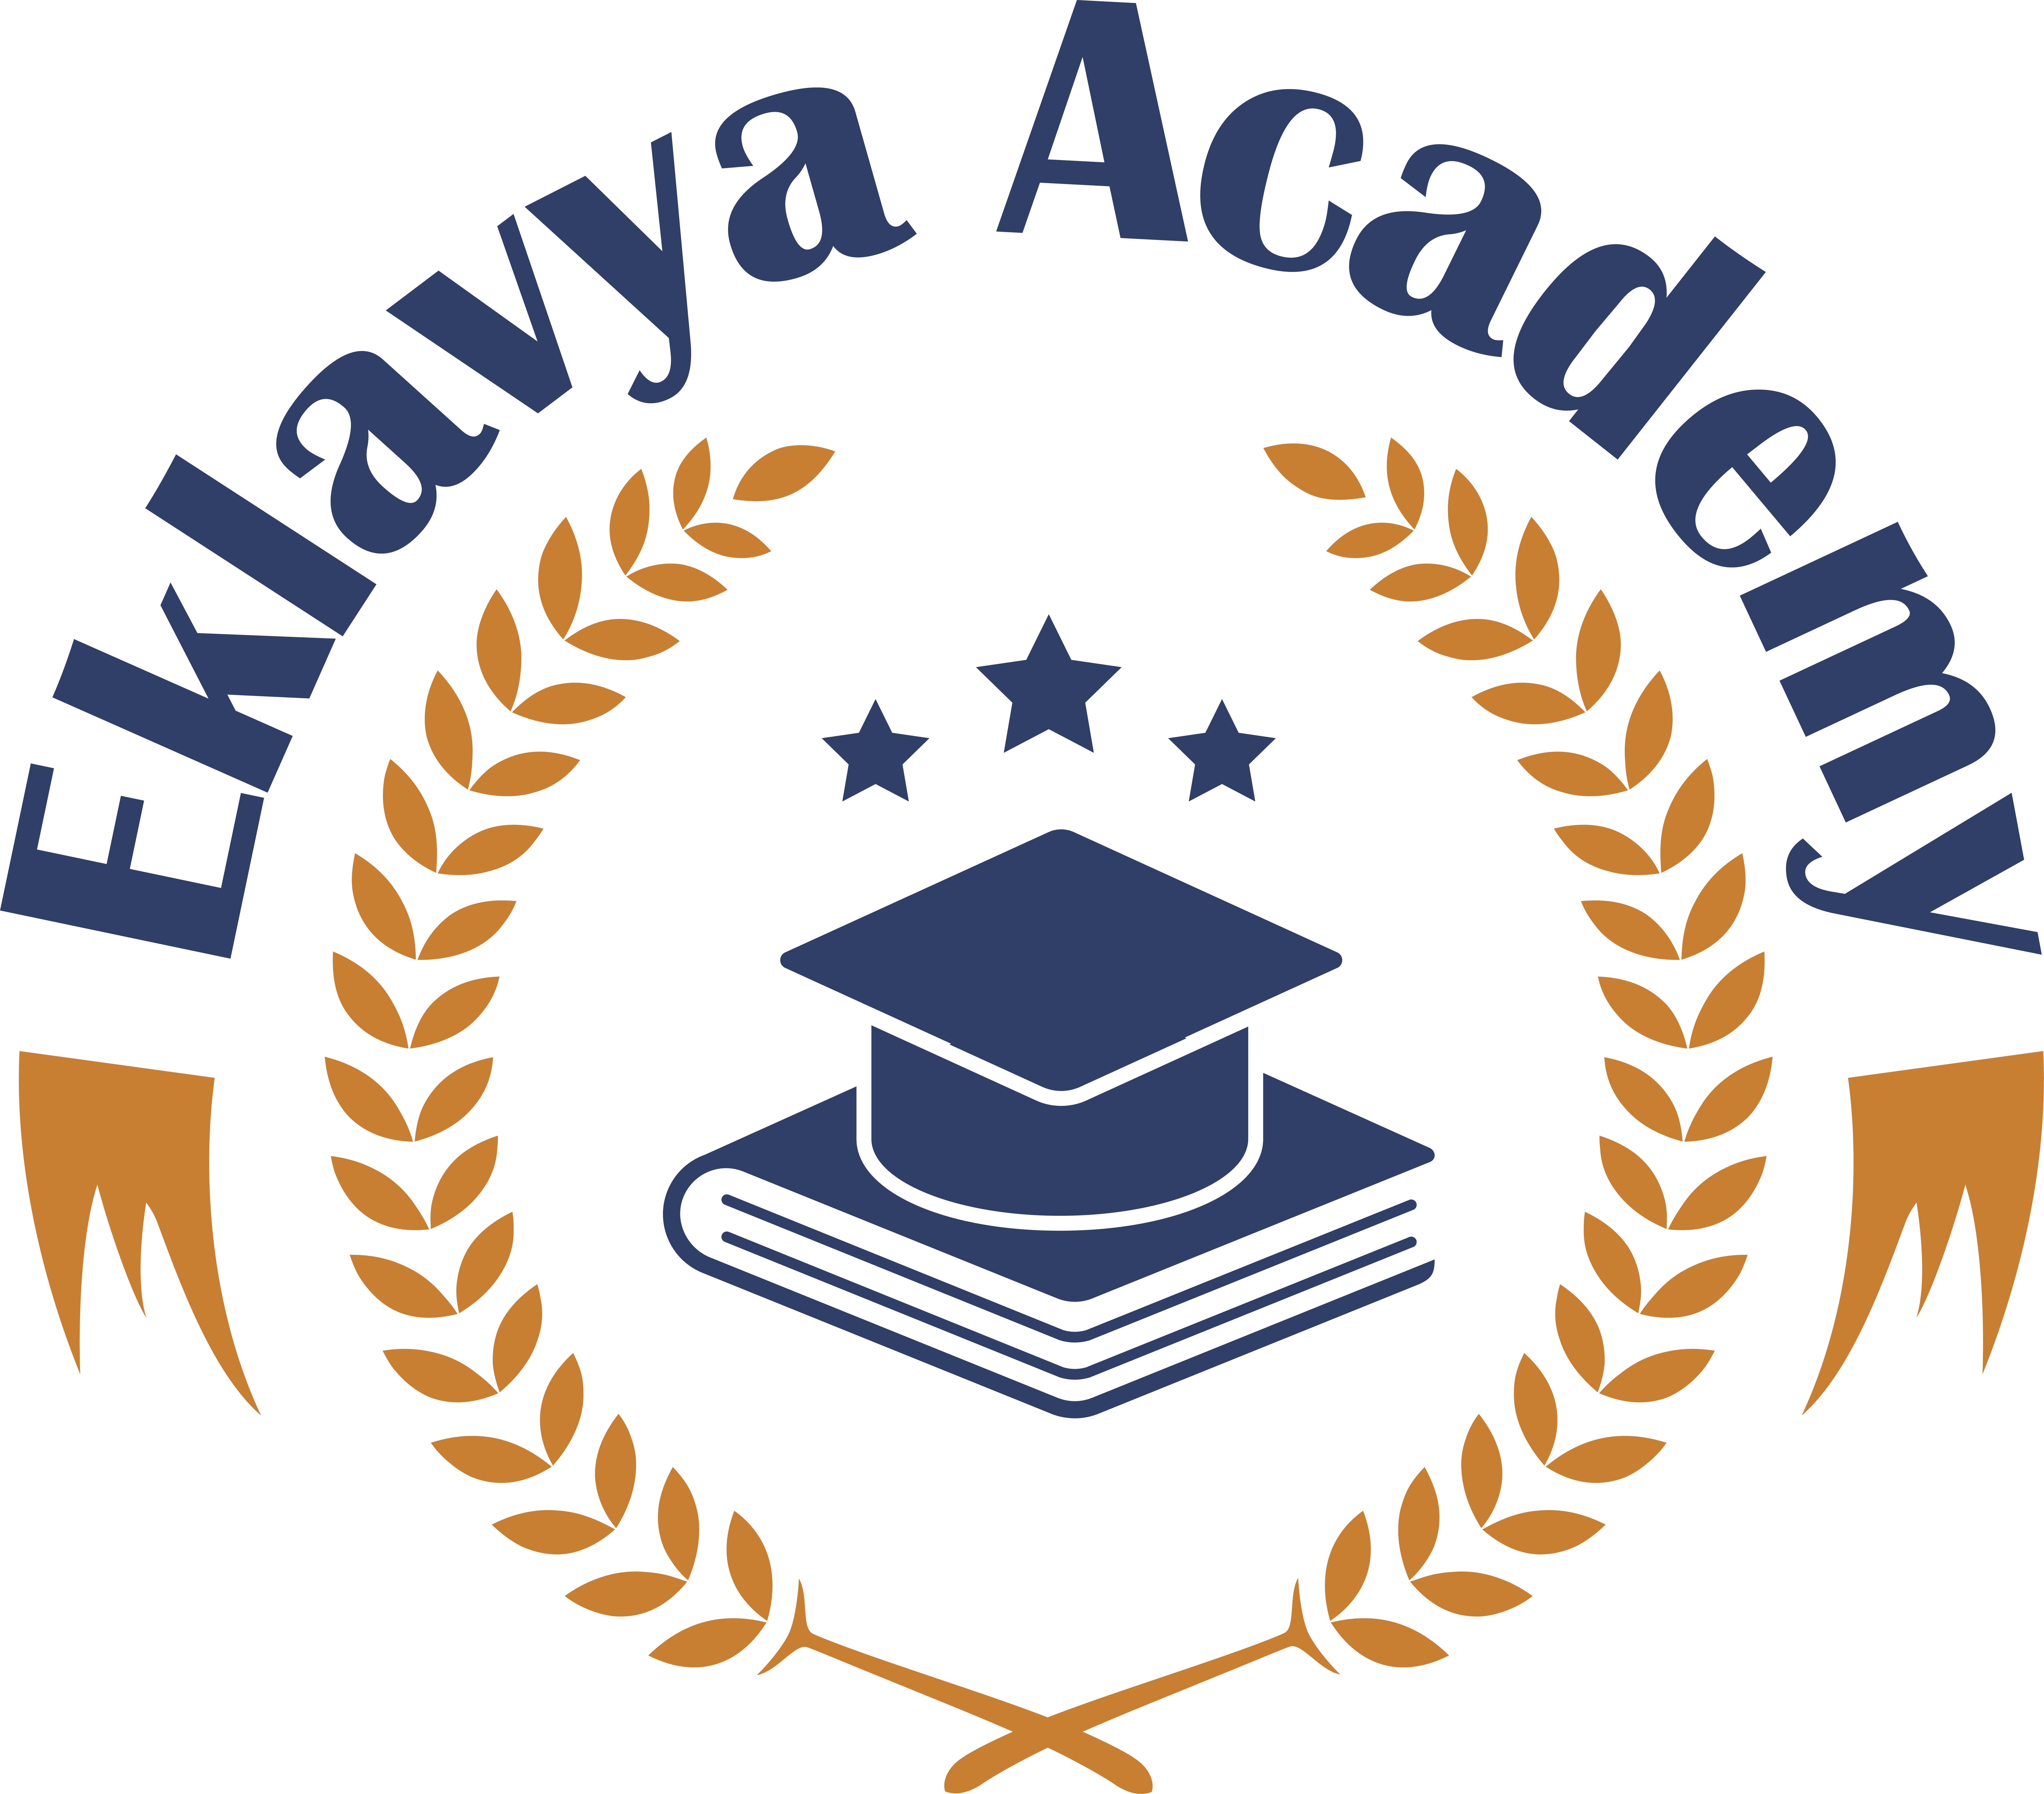 Eklavya Academy